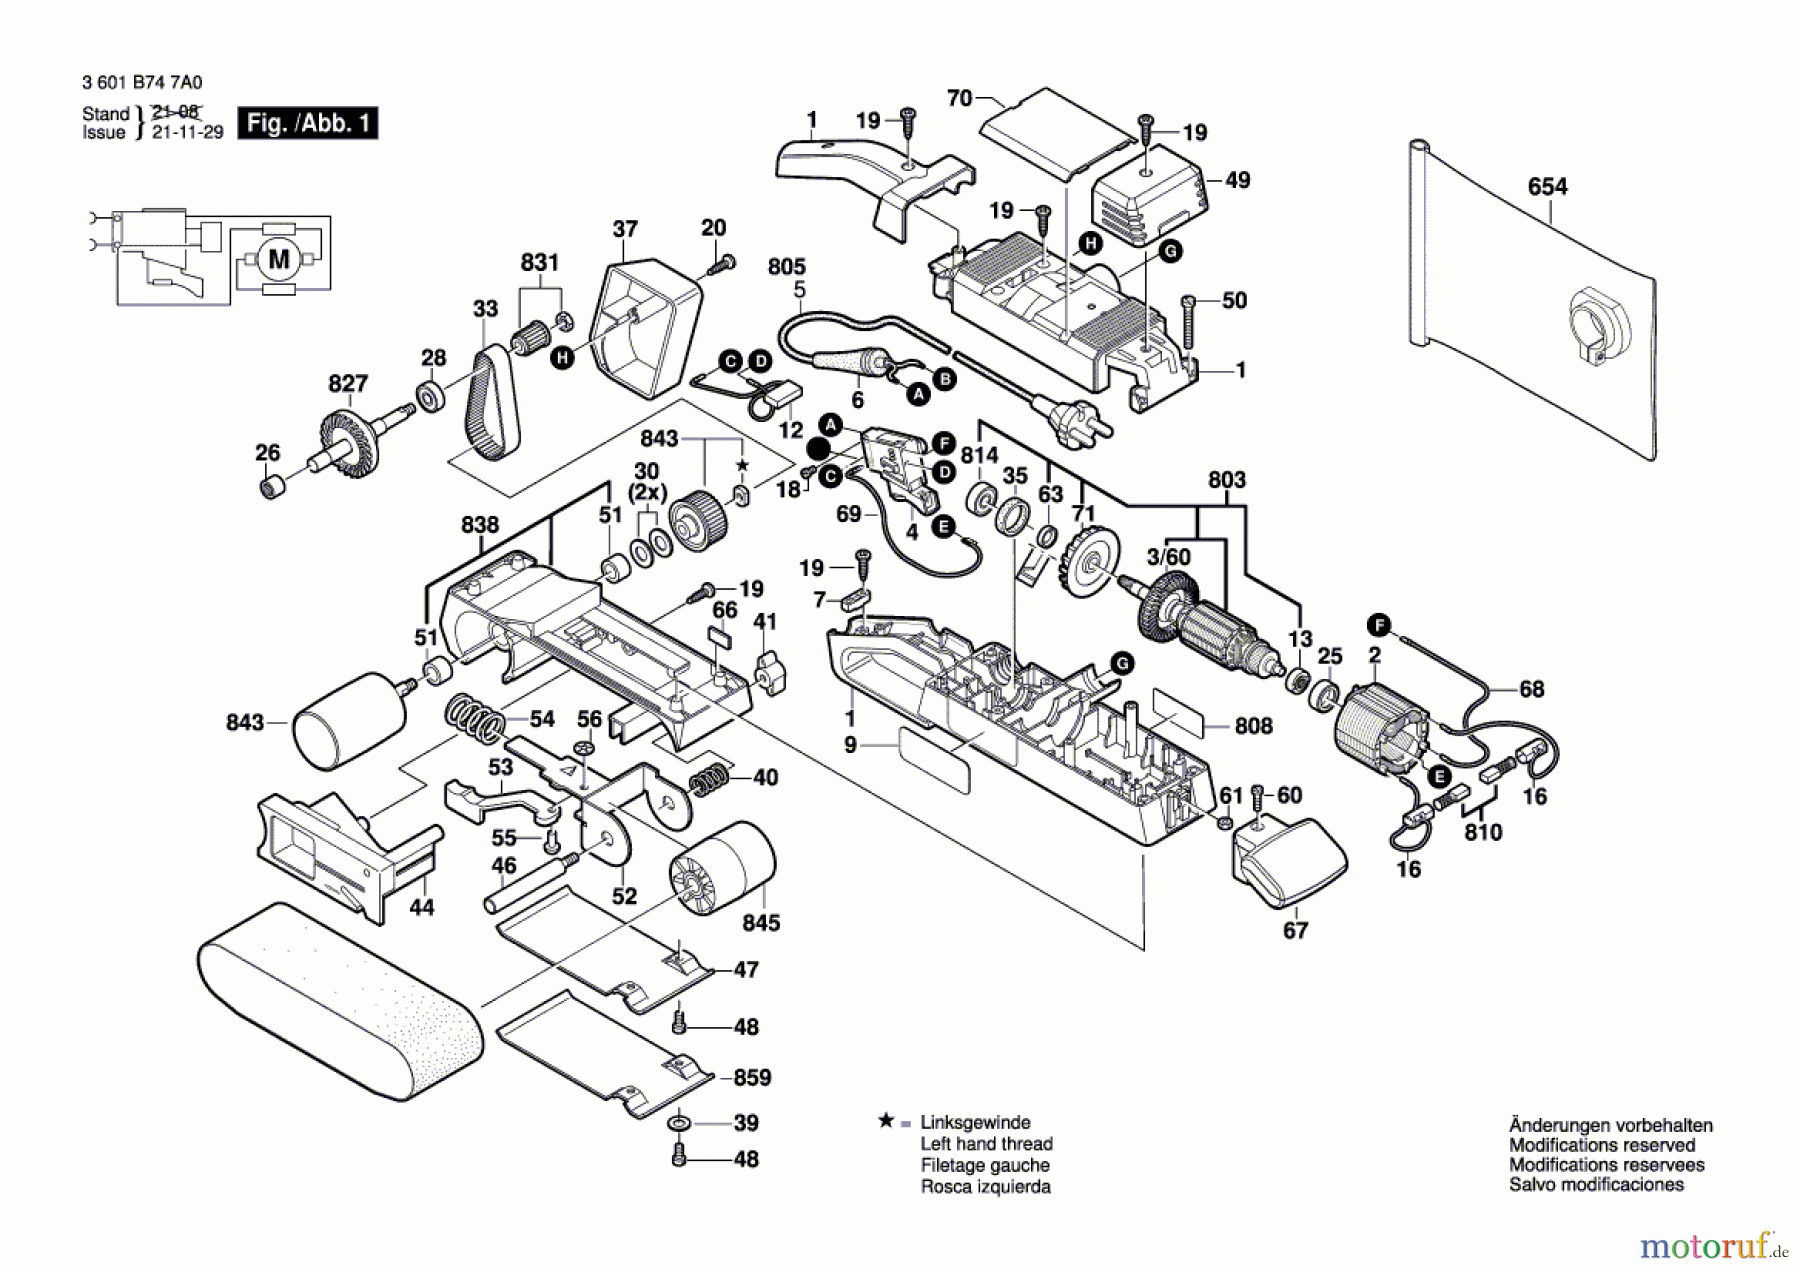  Bosch Werkzeug Bandschleifer GBS 75 AE Seite 1